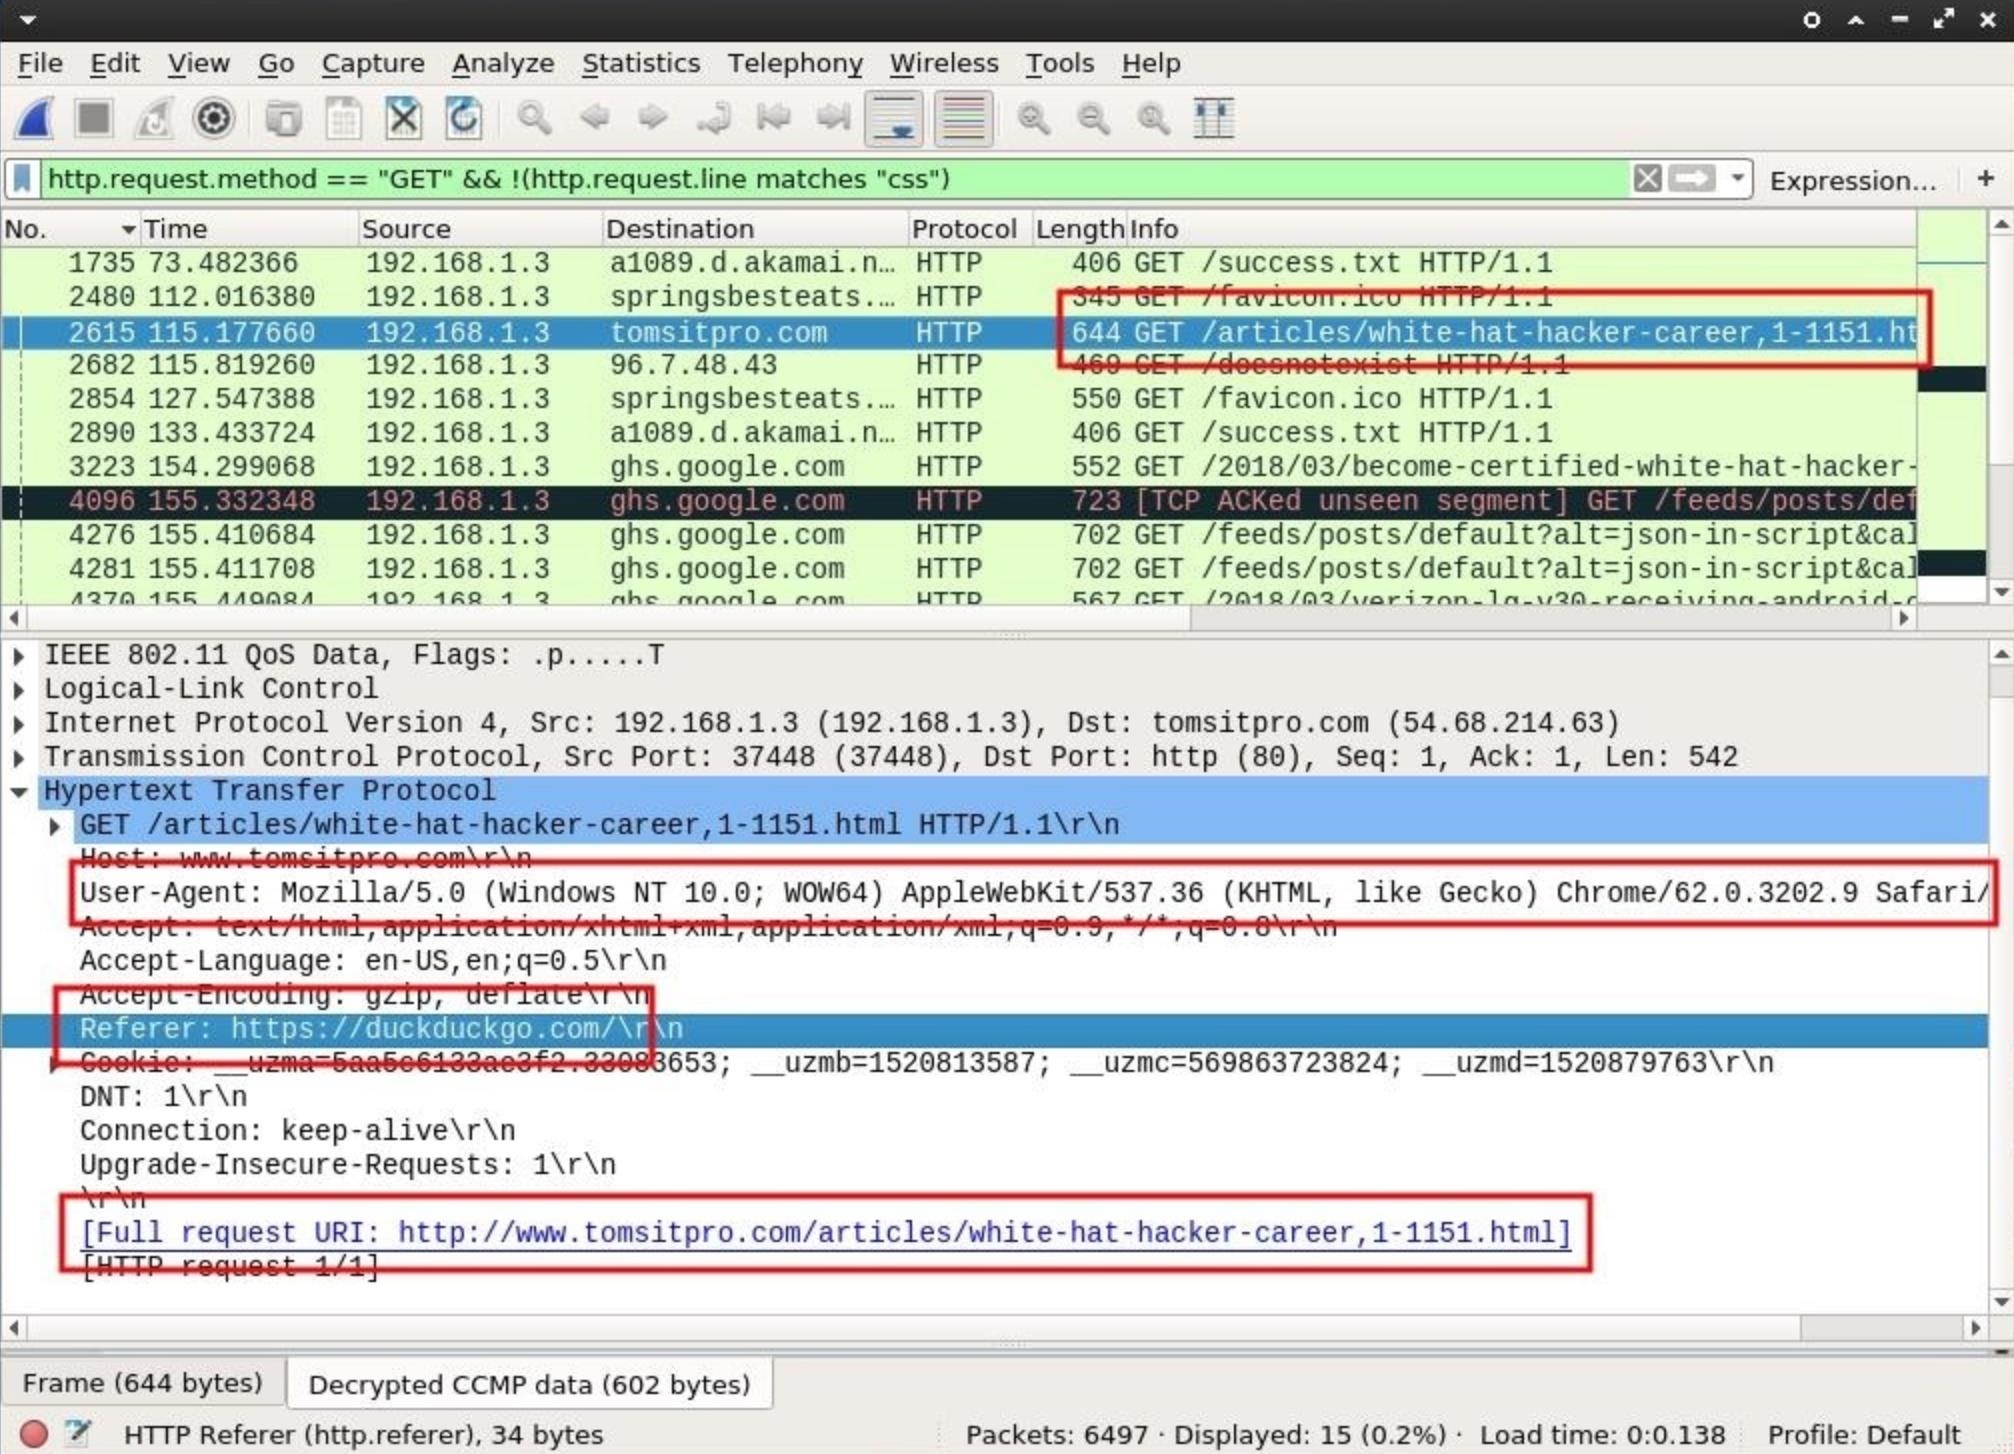 Отображение в Wireshark подробной информацией об активности пользователя через данные Hypertext Transfer Protocol